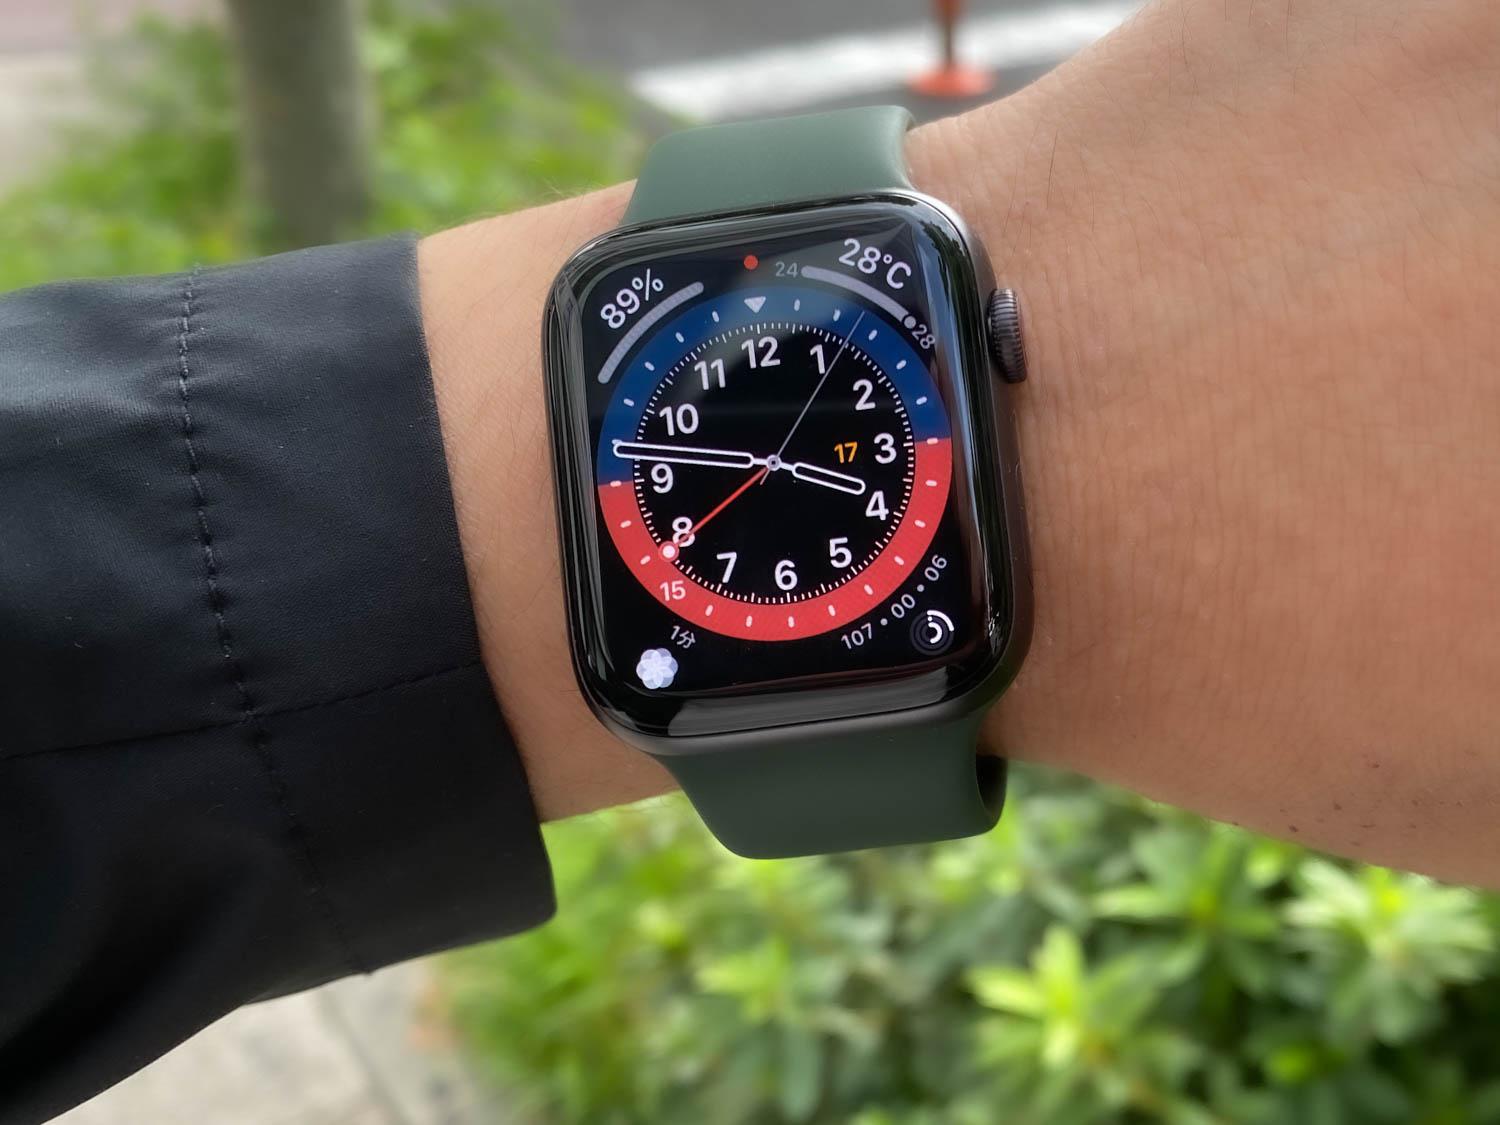 【特価】 Apple Watch Series 6 40mm アルミ ブルー ソロループ付 その他